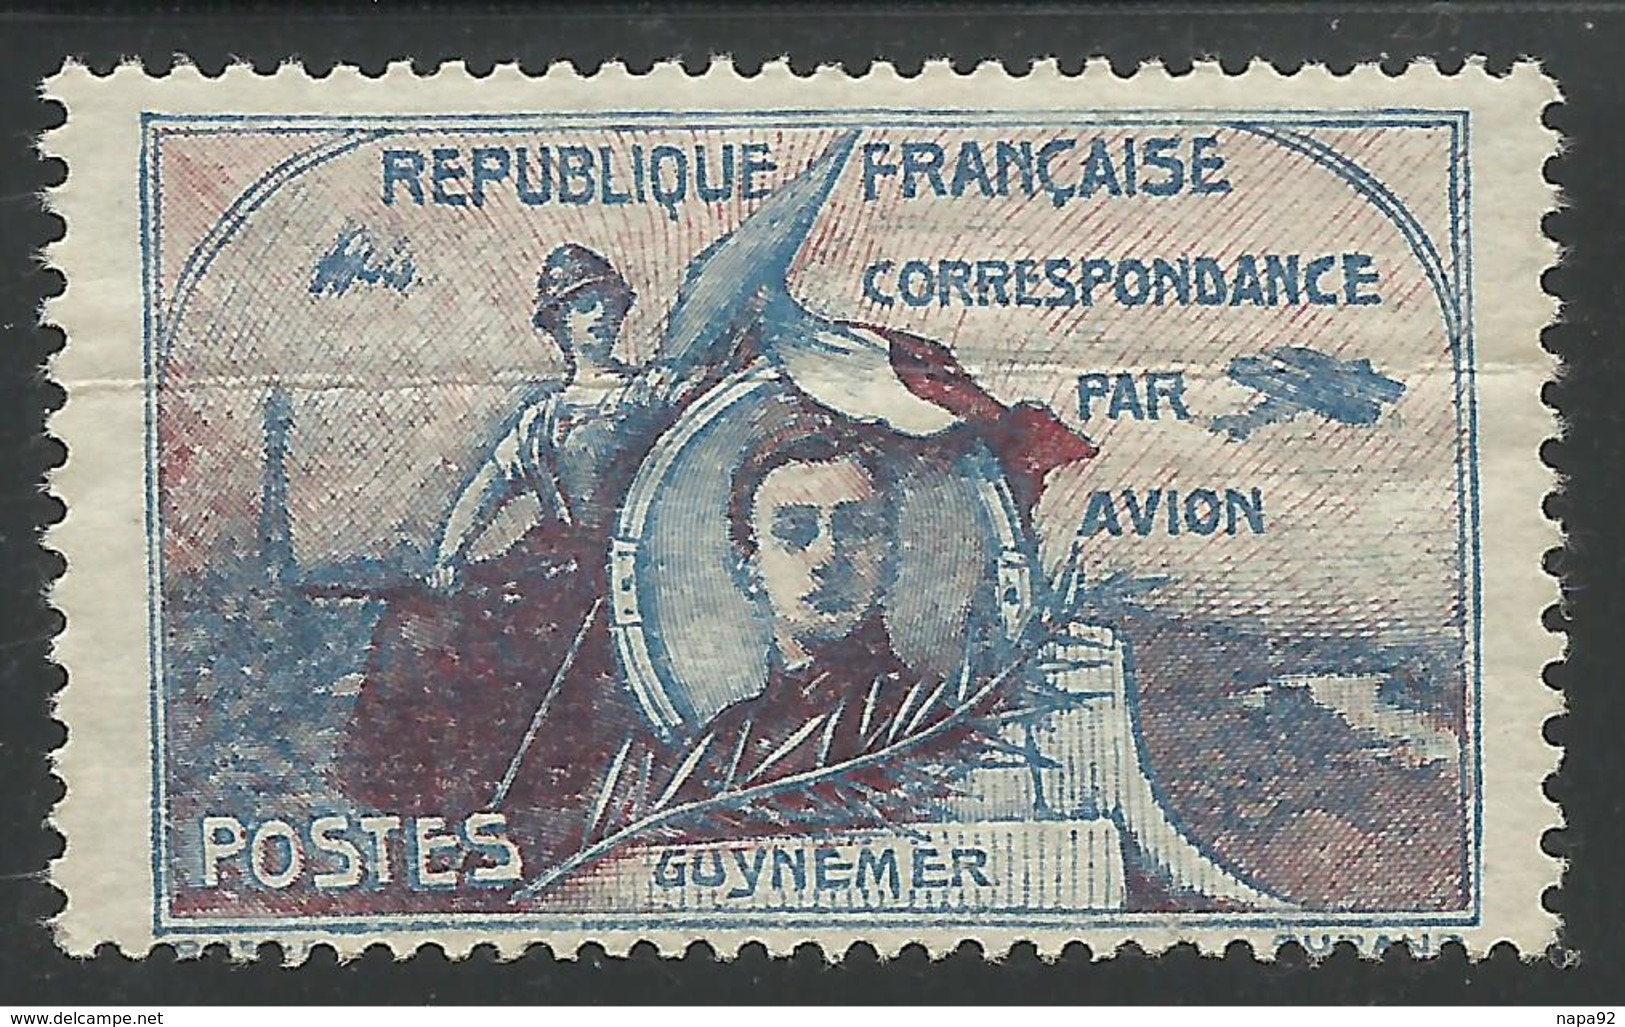 FRANCE 1920 - PRECURSEUR DE LA POSTE AERIENNE - GUYNEMER - Premiers Vols